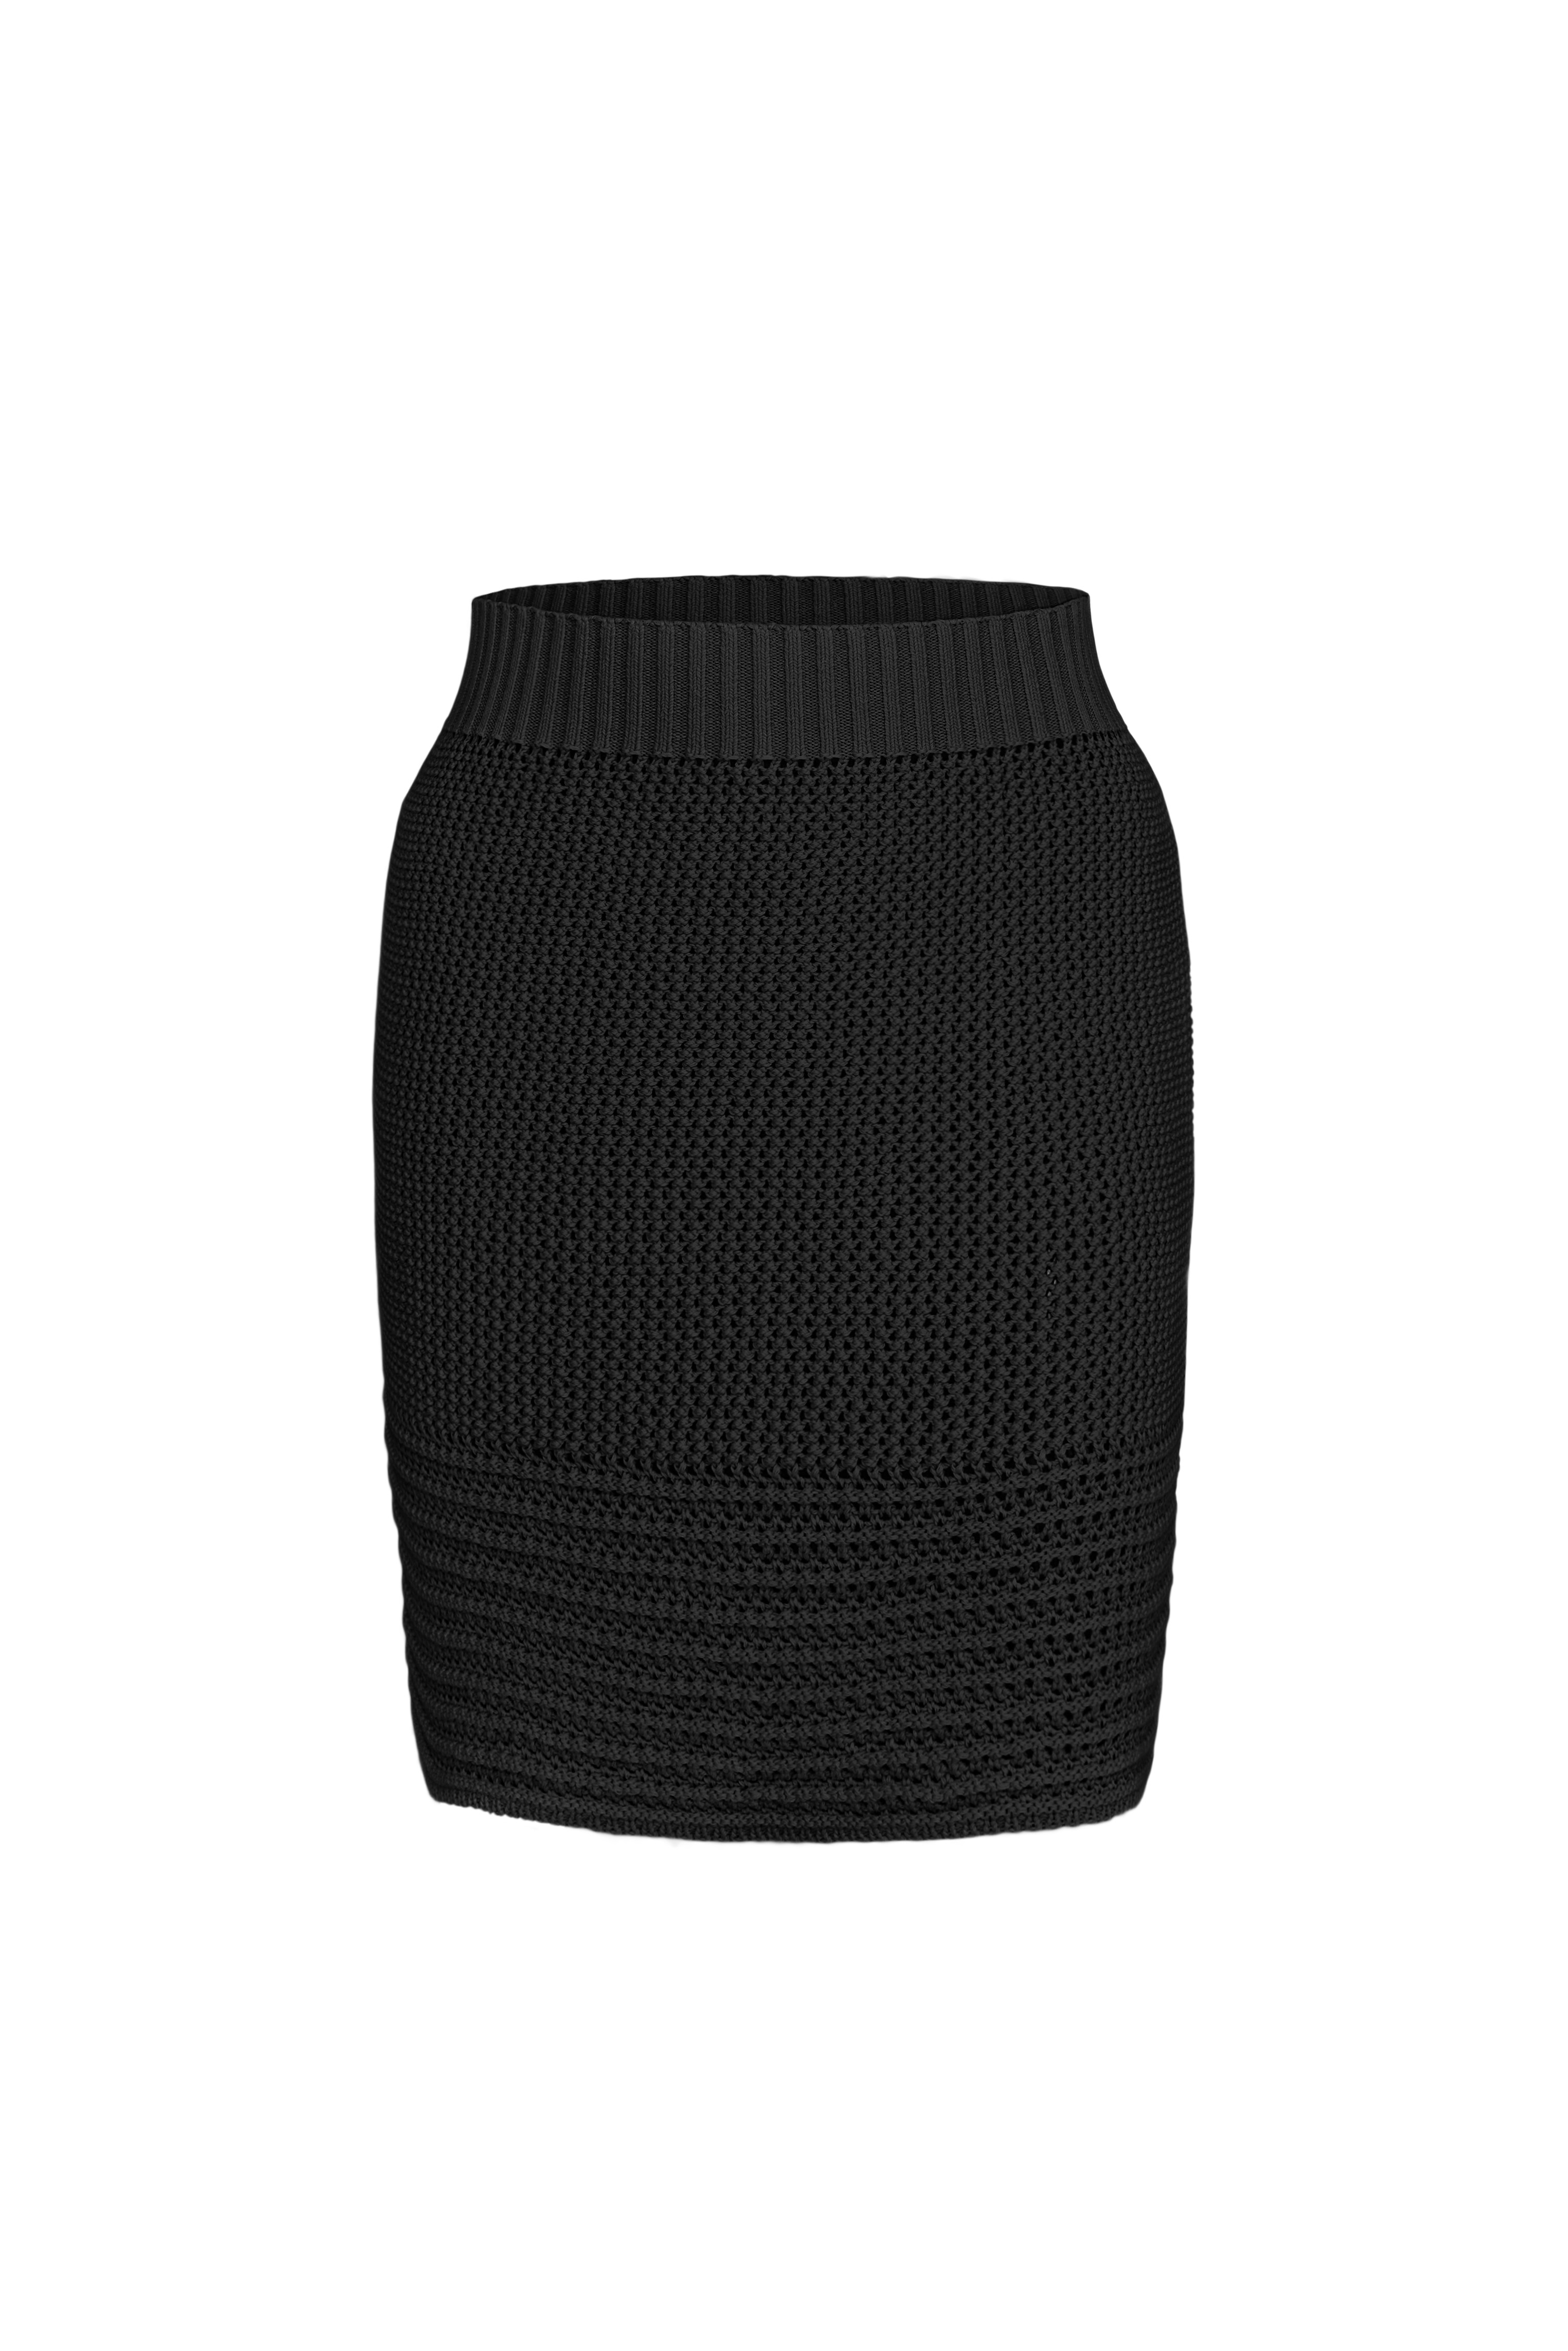 Skirt 4666-01 Black from BRUSNiKA